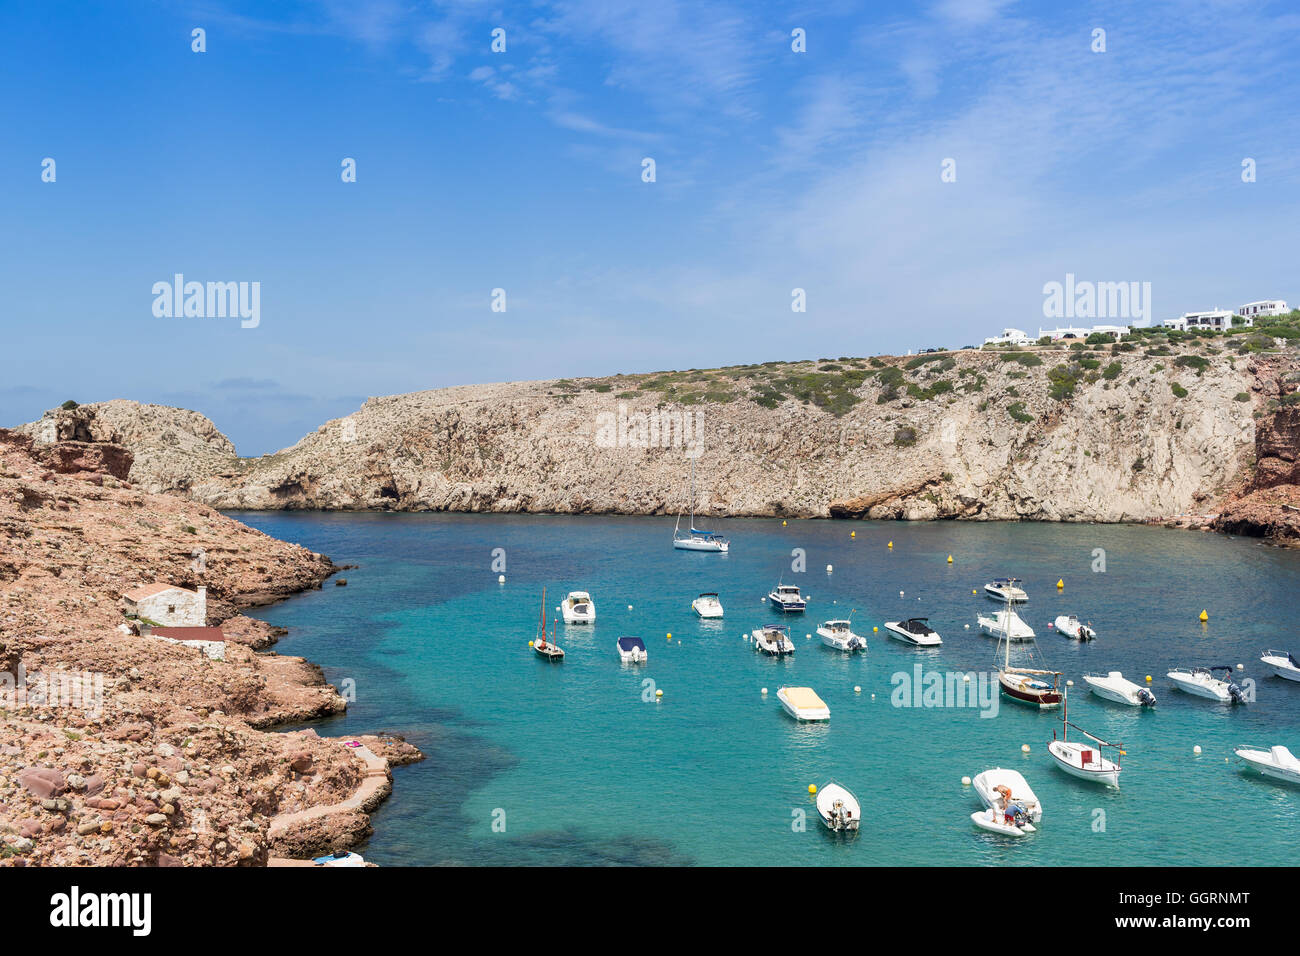 Boote in einer türkis blaue Bucht, umgeben von Klippen und Felsen Stockfoto